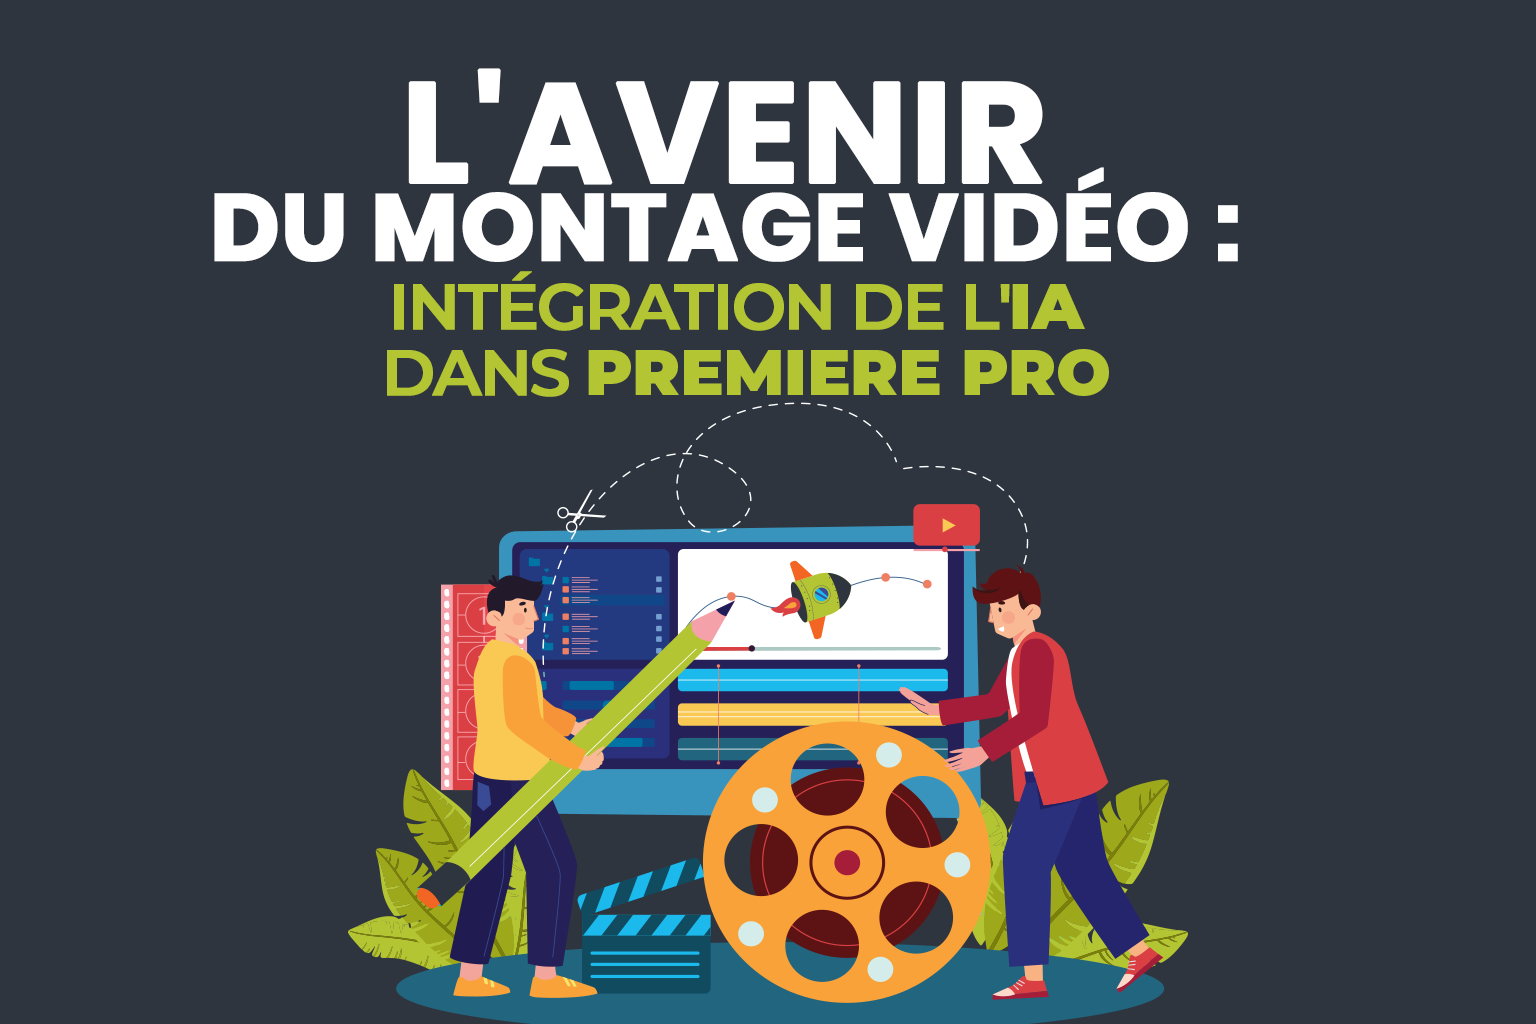 Lavenir-du-montage-video--intégration-de-lIA-dans-Premiere-Pro